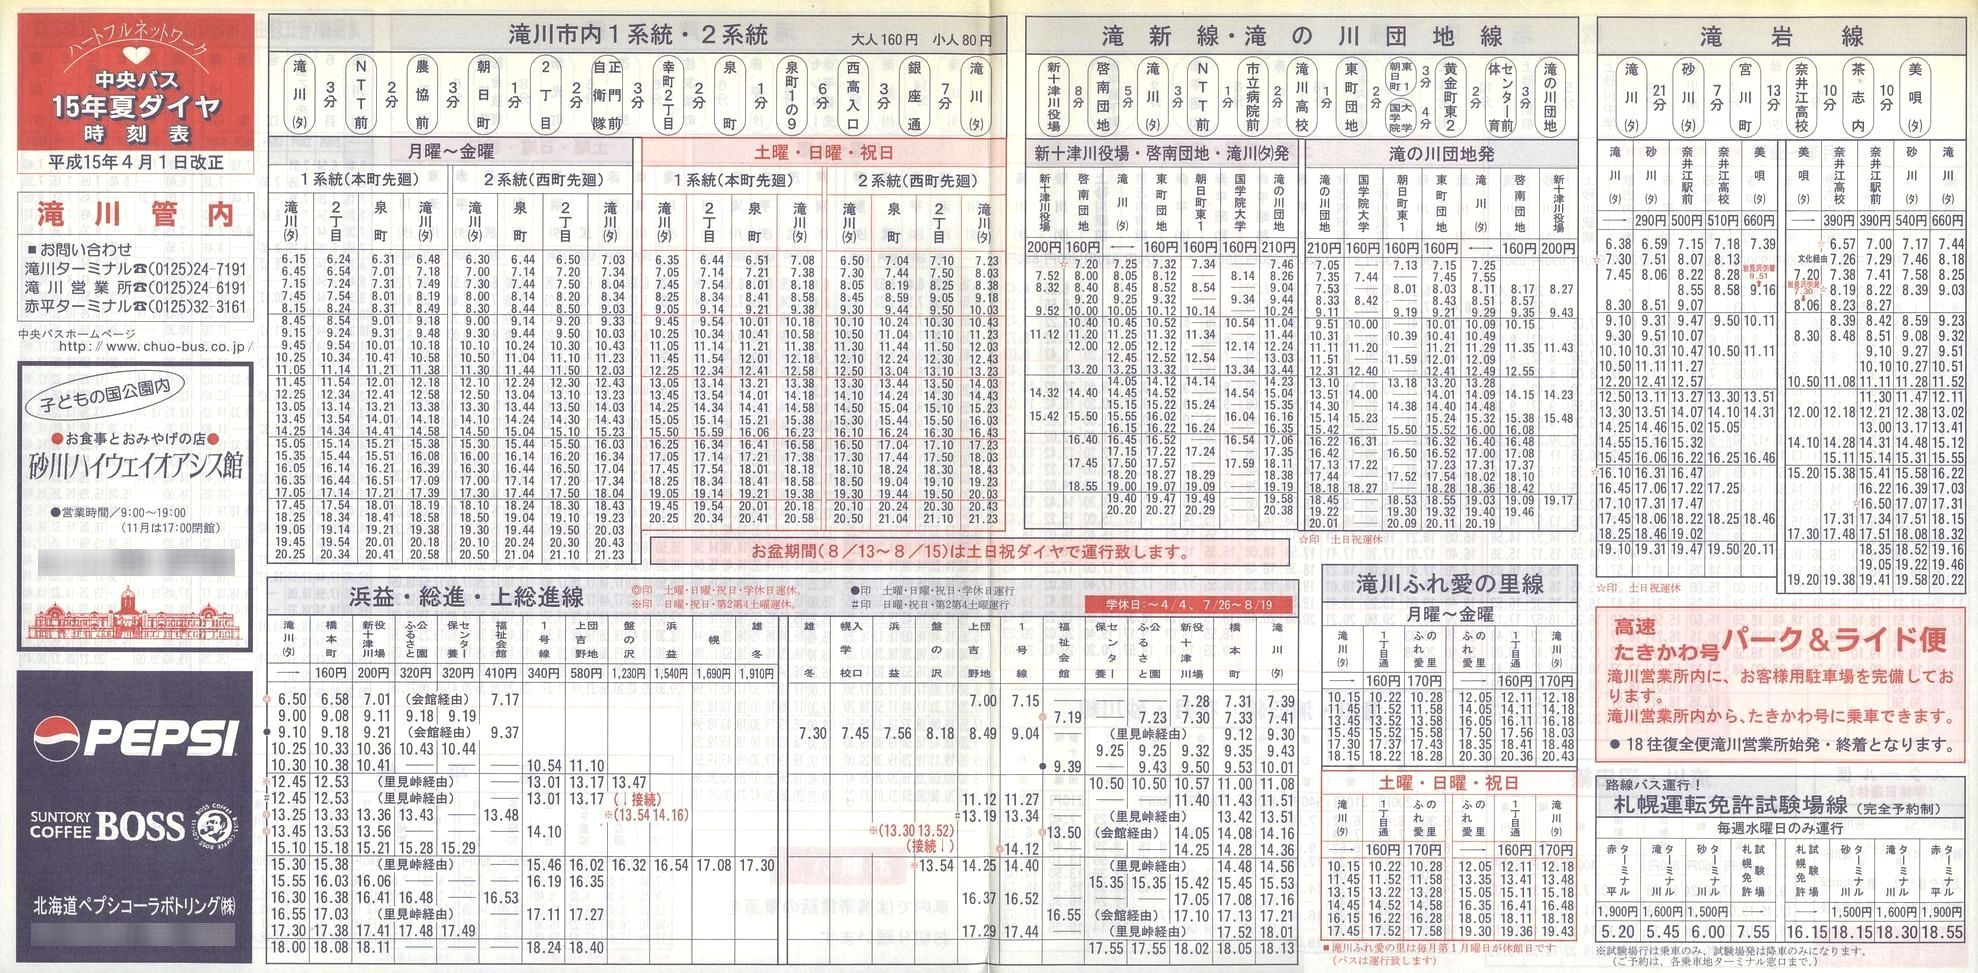 2003-04-01改正_北海道中央バス(空知)_滝川管内線時刻表表面